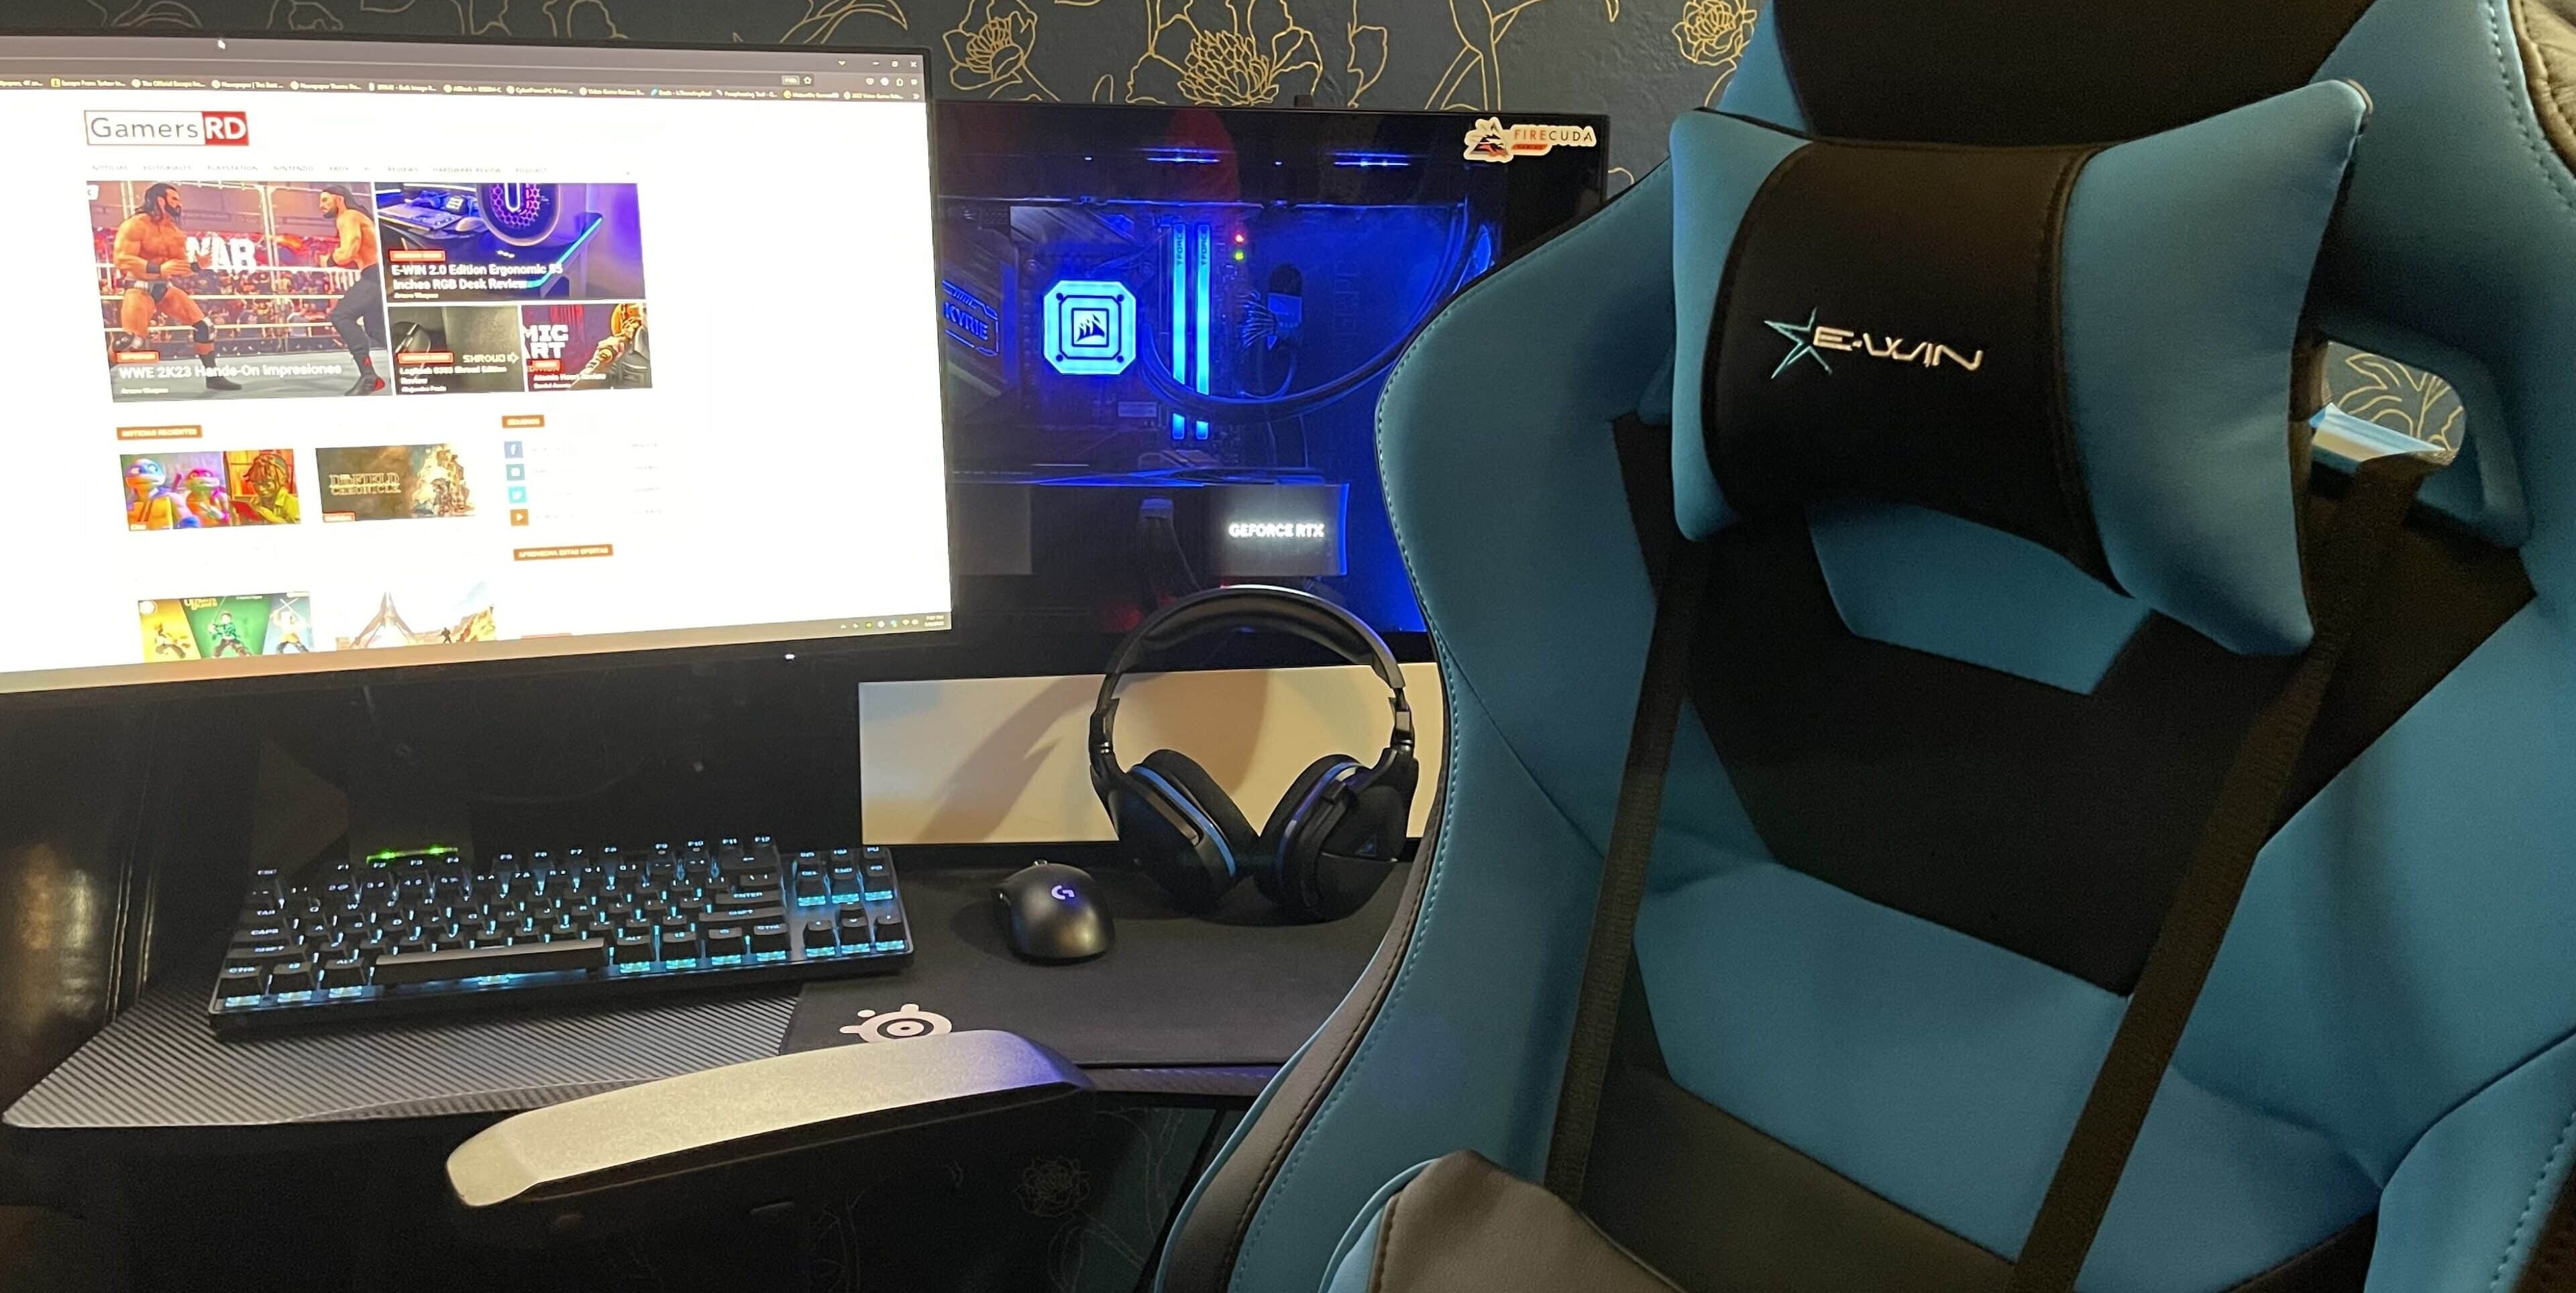 E-Win Flash XL La mejor silla gaming para los más grandes y pesados GamersRD23